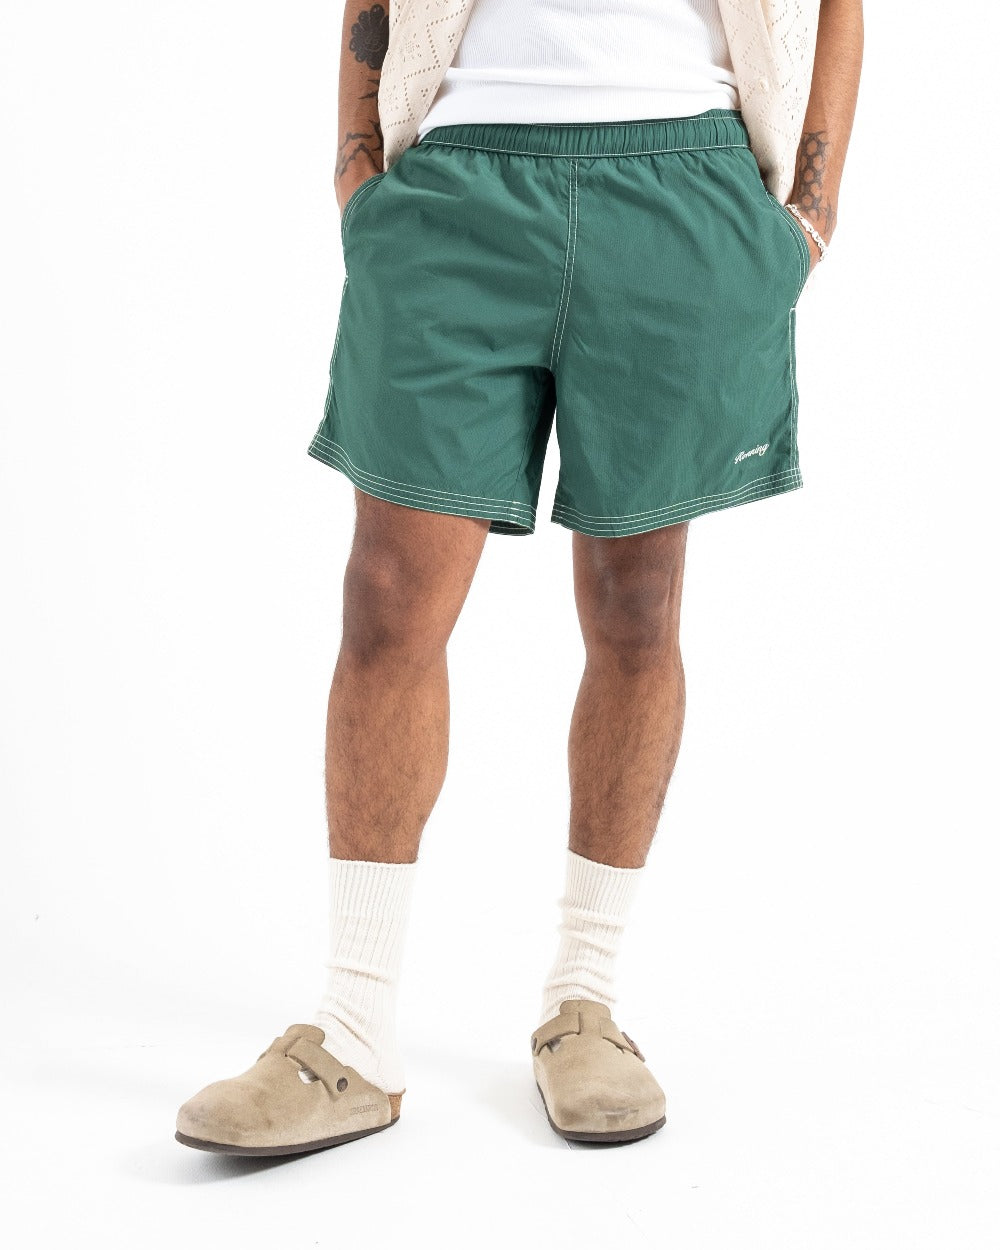 male model wearing dark green swim shorts